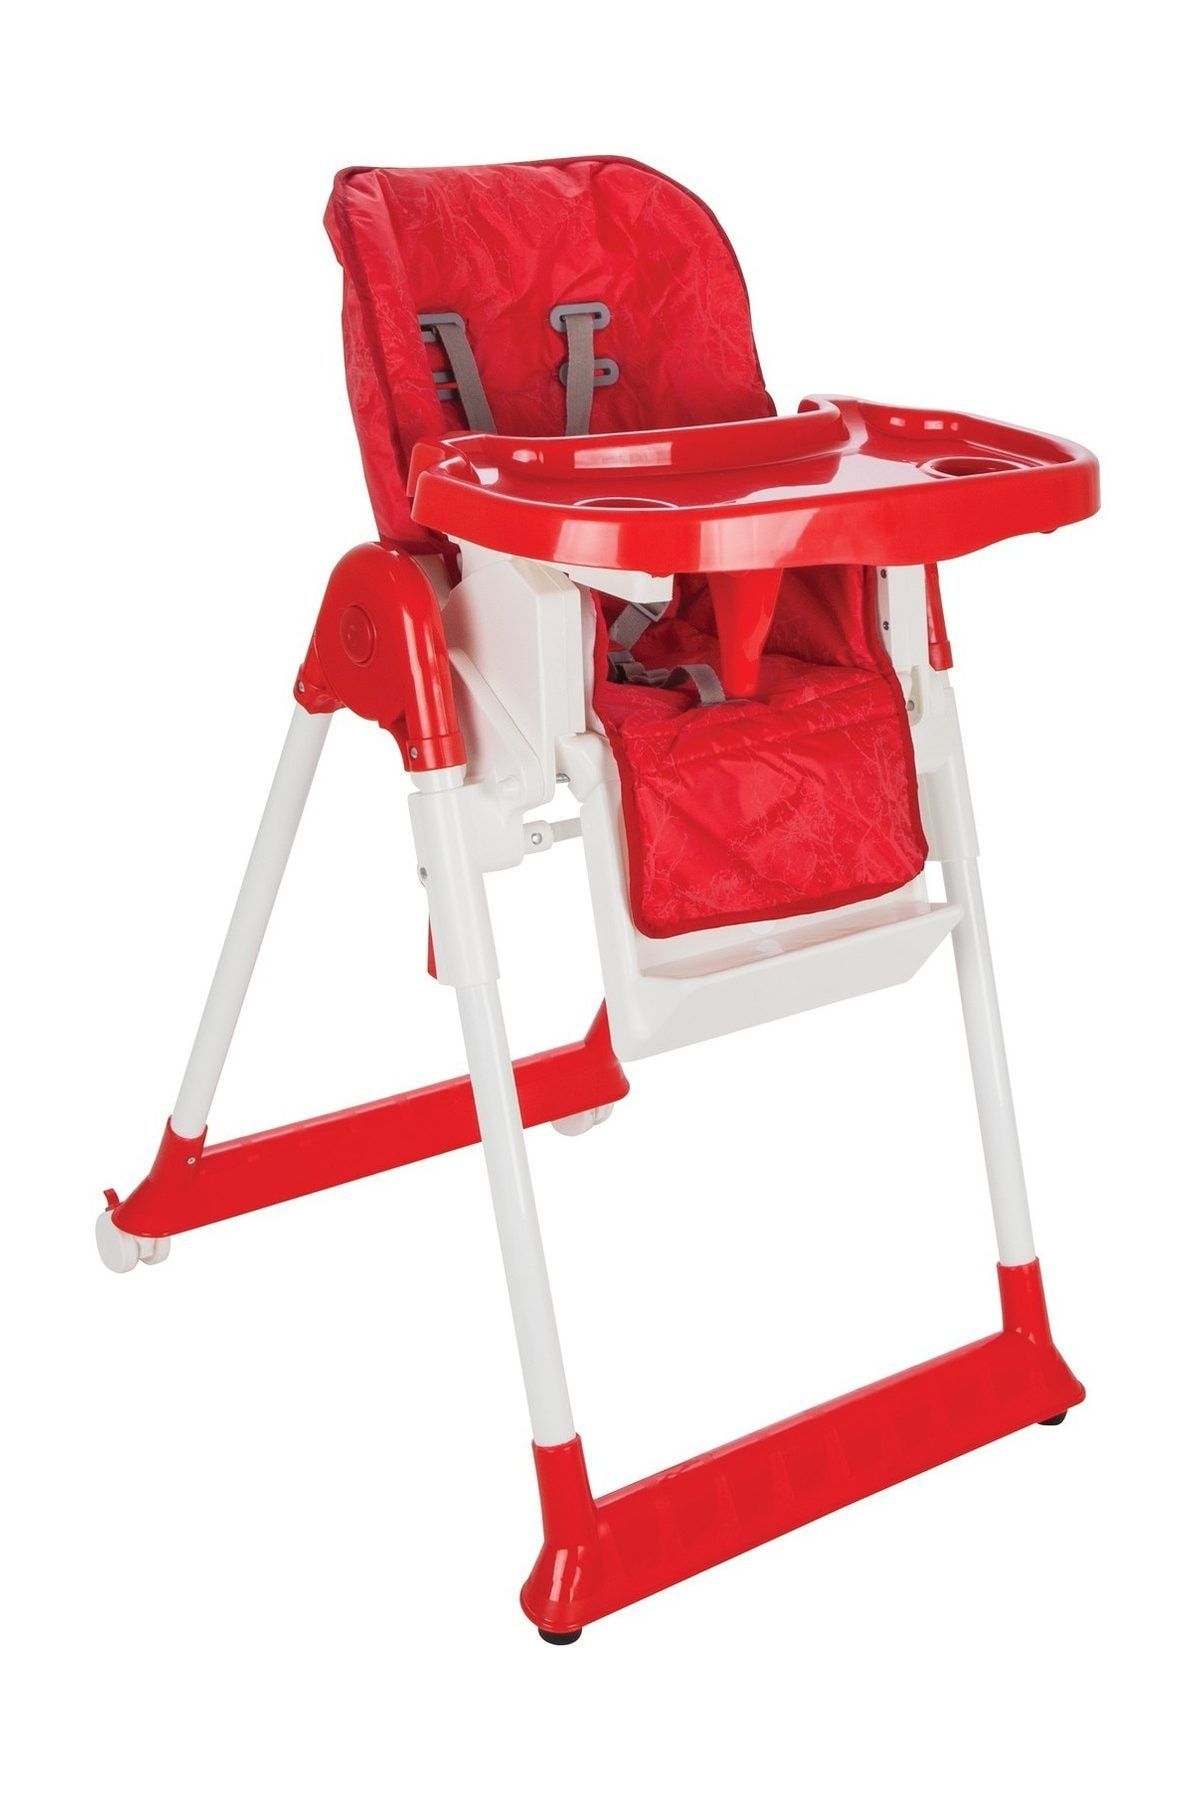 PİLSAN Pilsan Süper Mama Sandalyesi - Lükks Kademeli - Katlanabilir - Tekerlekli Mama Sandalyesi - Kırmızı